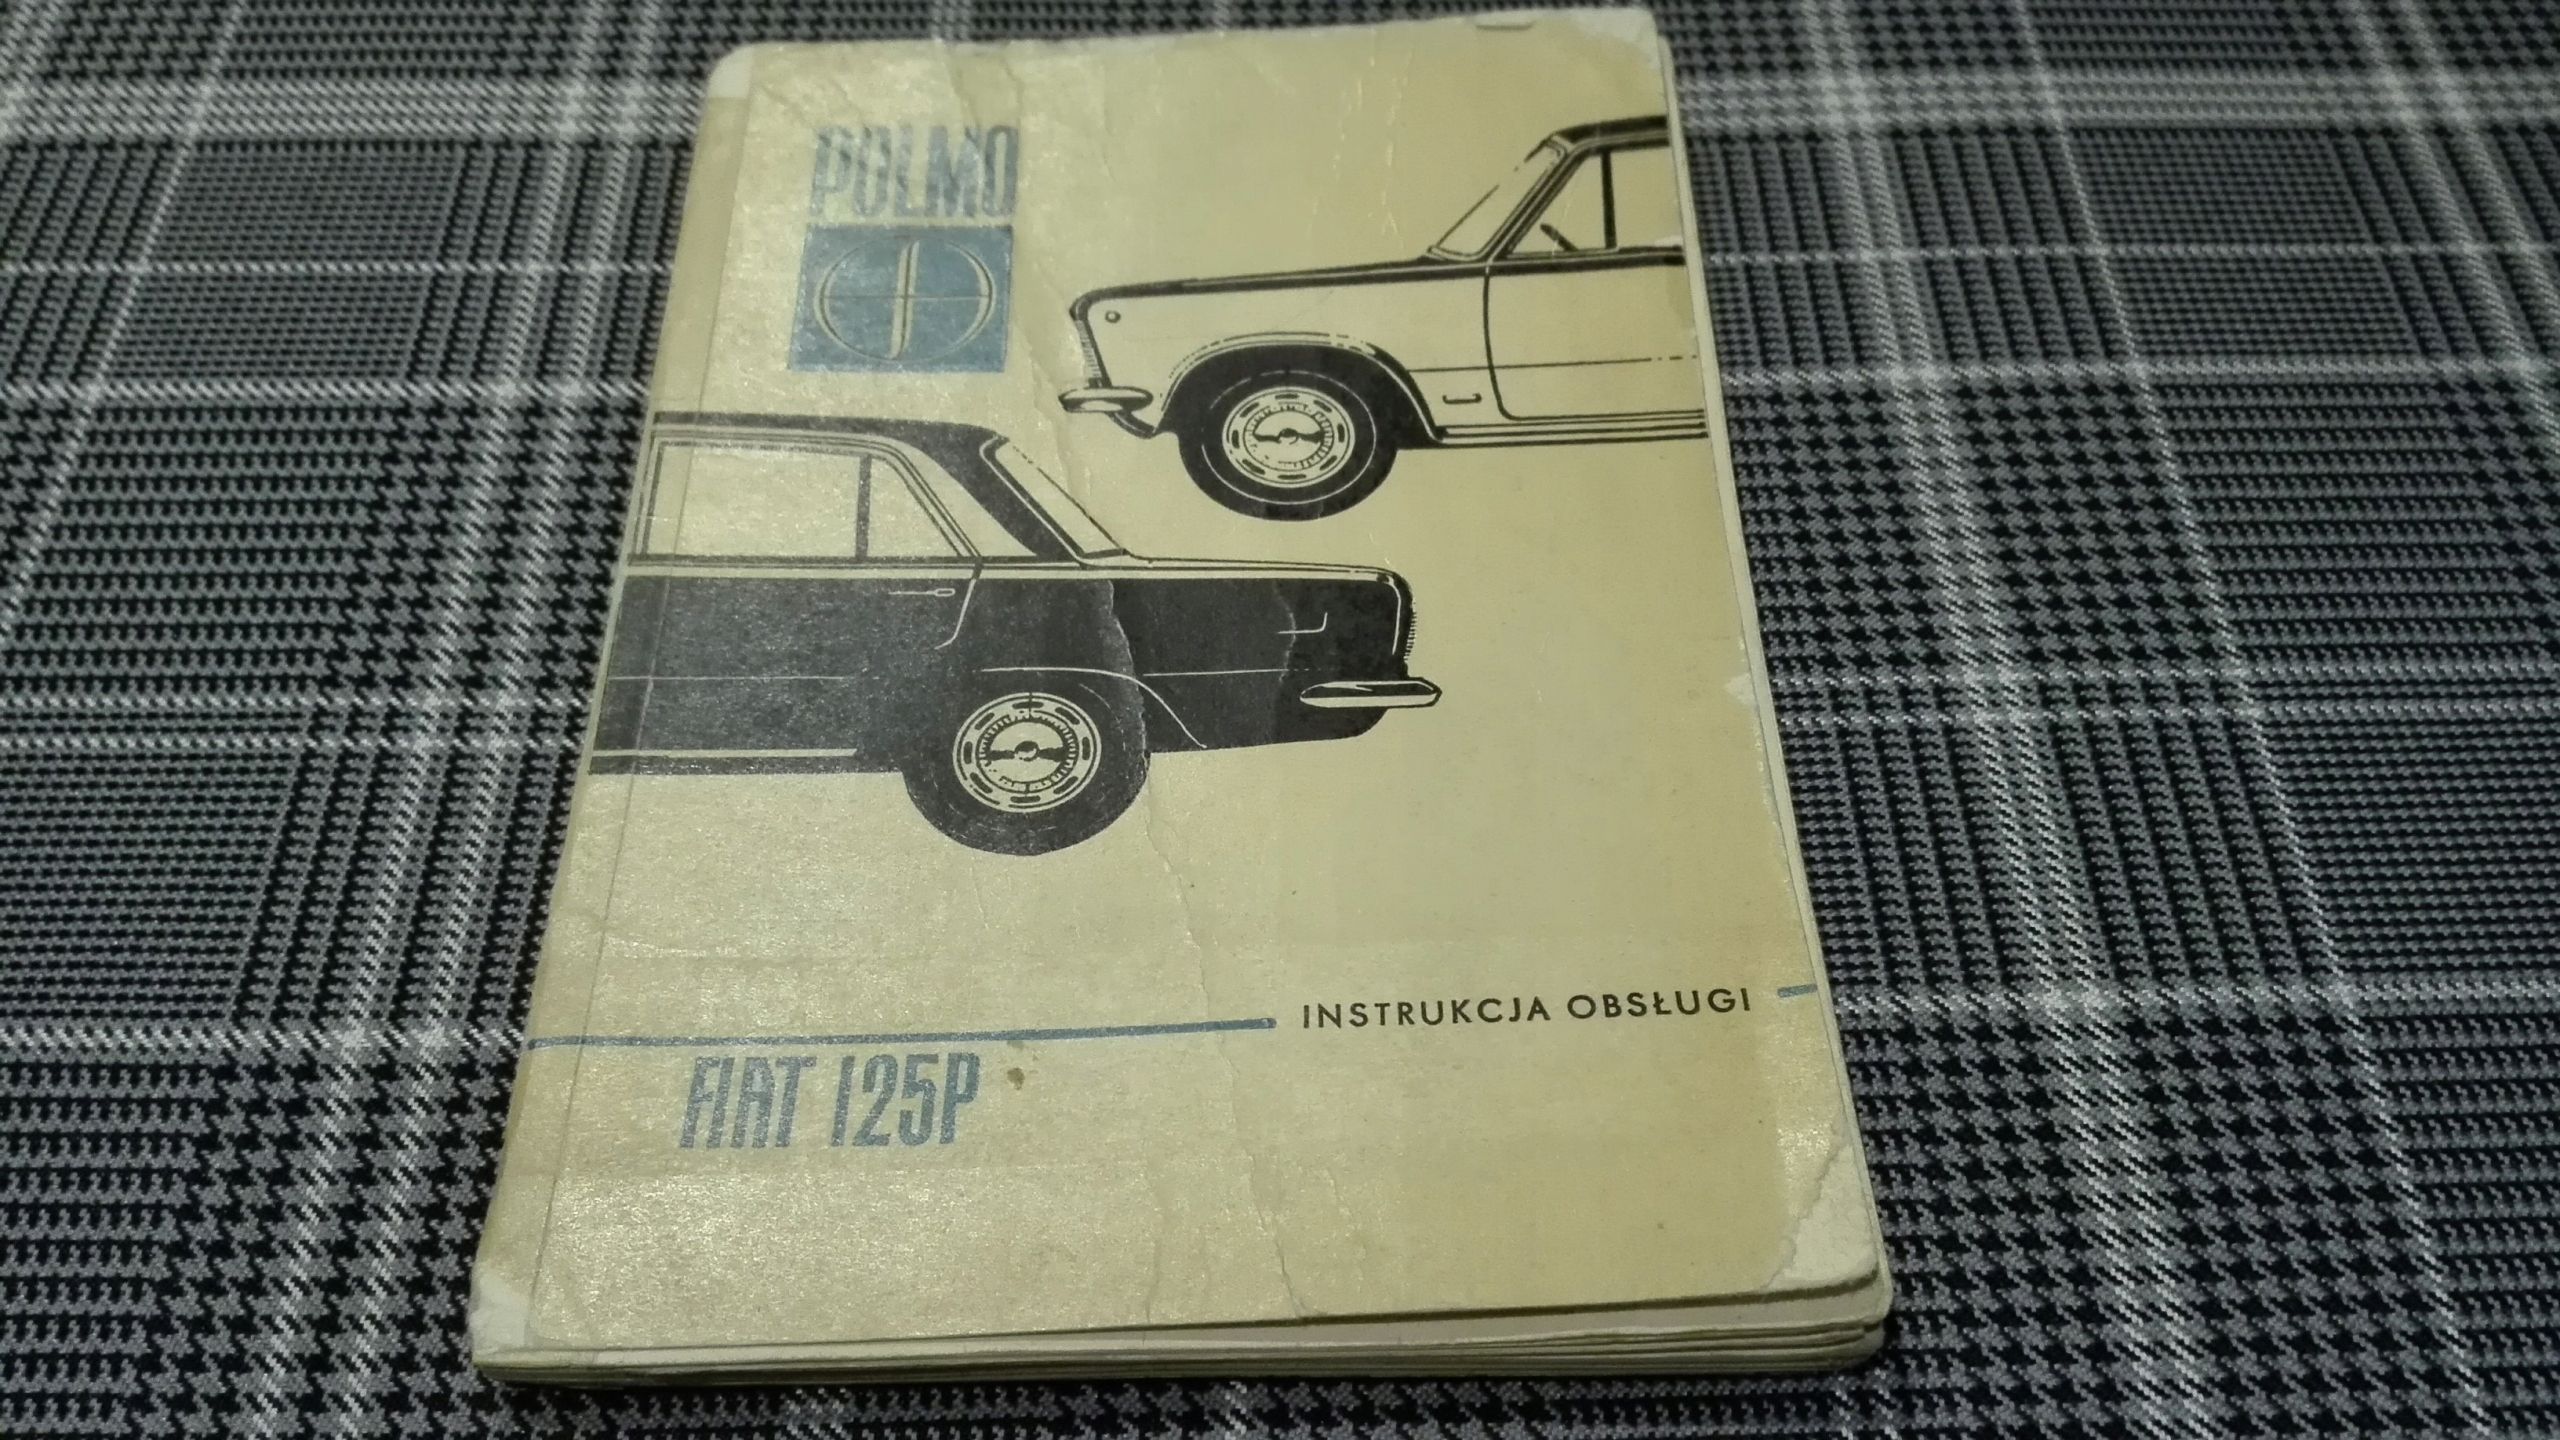 DUZY FIAT 125p Instrukcja Obslugi Ksiazka 1970 FSO